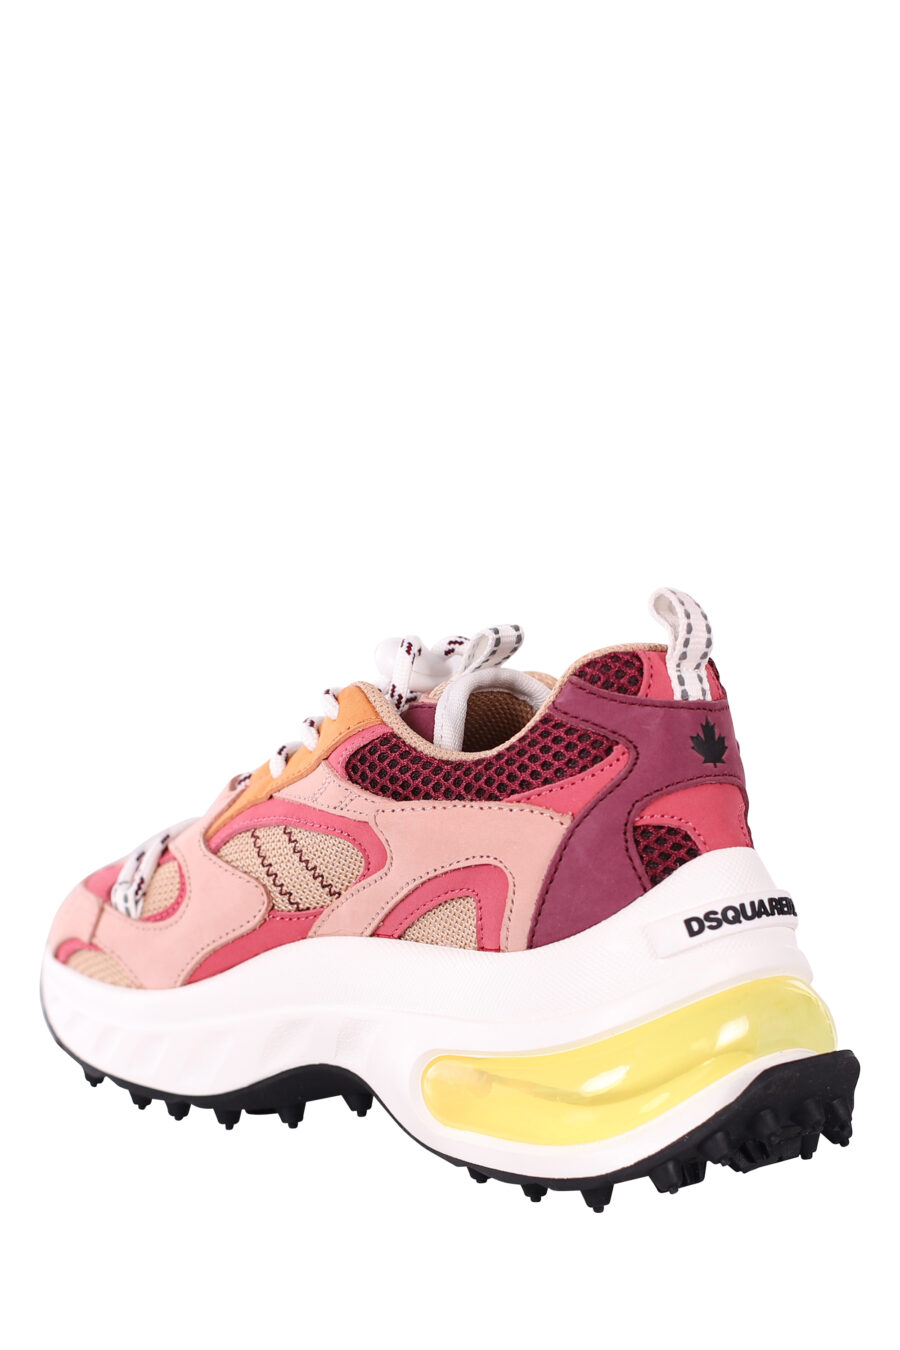 Zapatillas multicolor rosa con camara de aire amarilla - IMG 5834